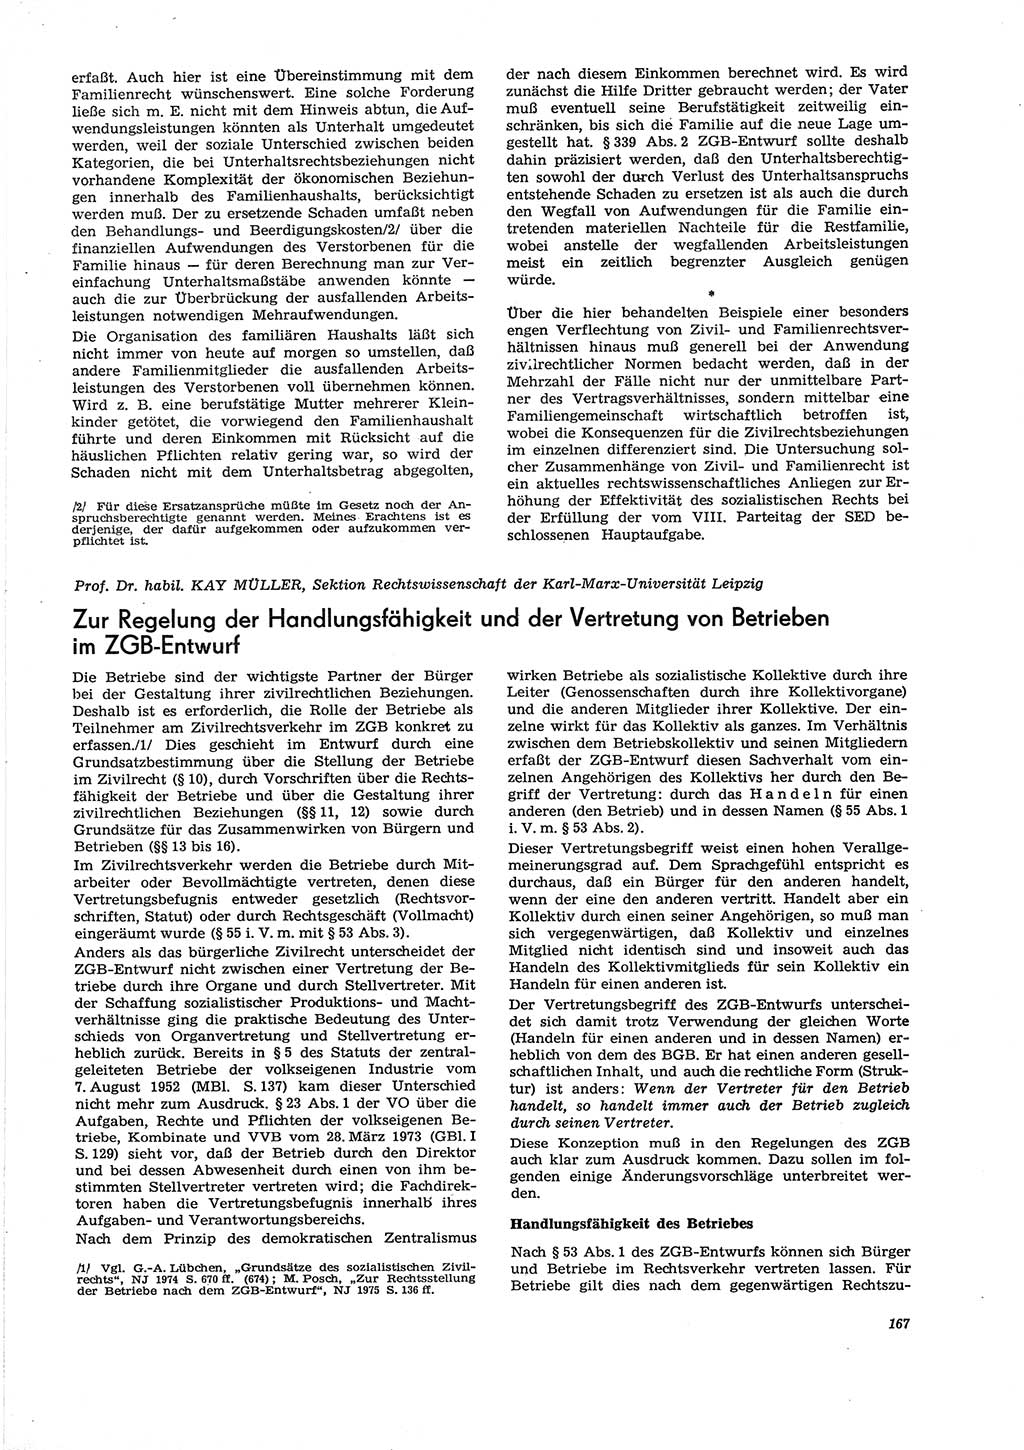 Neue Justiz (NJ), Zeitschrift für Recht und Rechtswissenschaft [Deutsche Demokratische Republik (DDR)], 29. Jahrgang 1975, Seite 167 (NJ DDR 1975, S. 167)